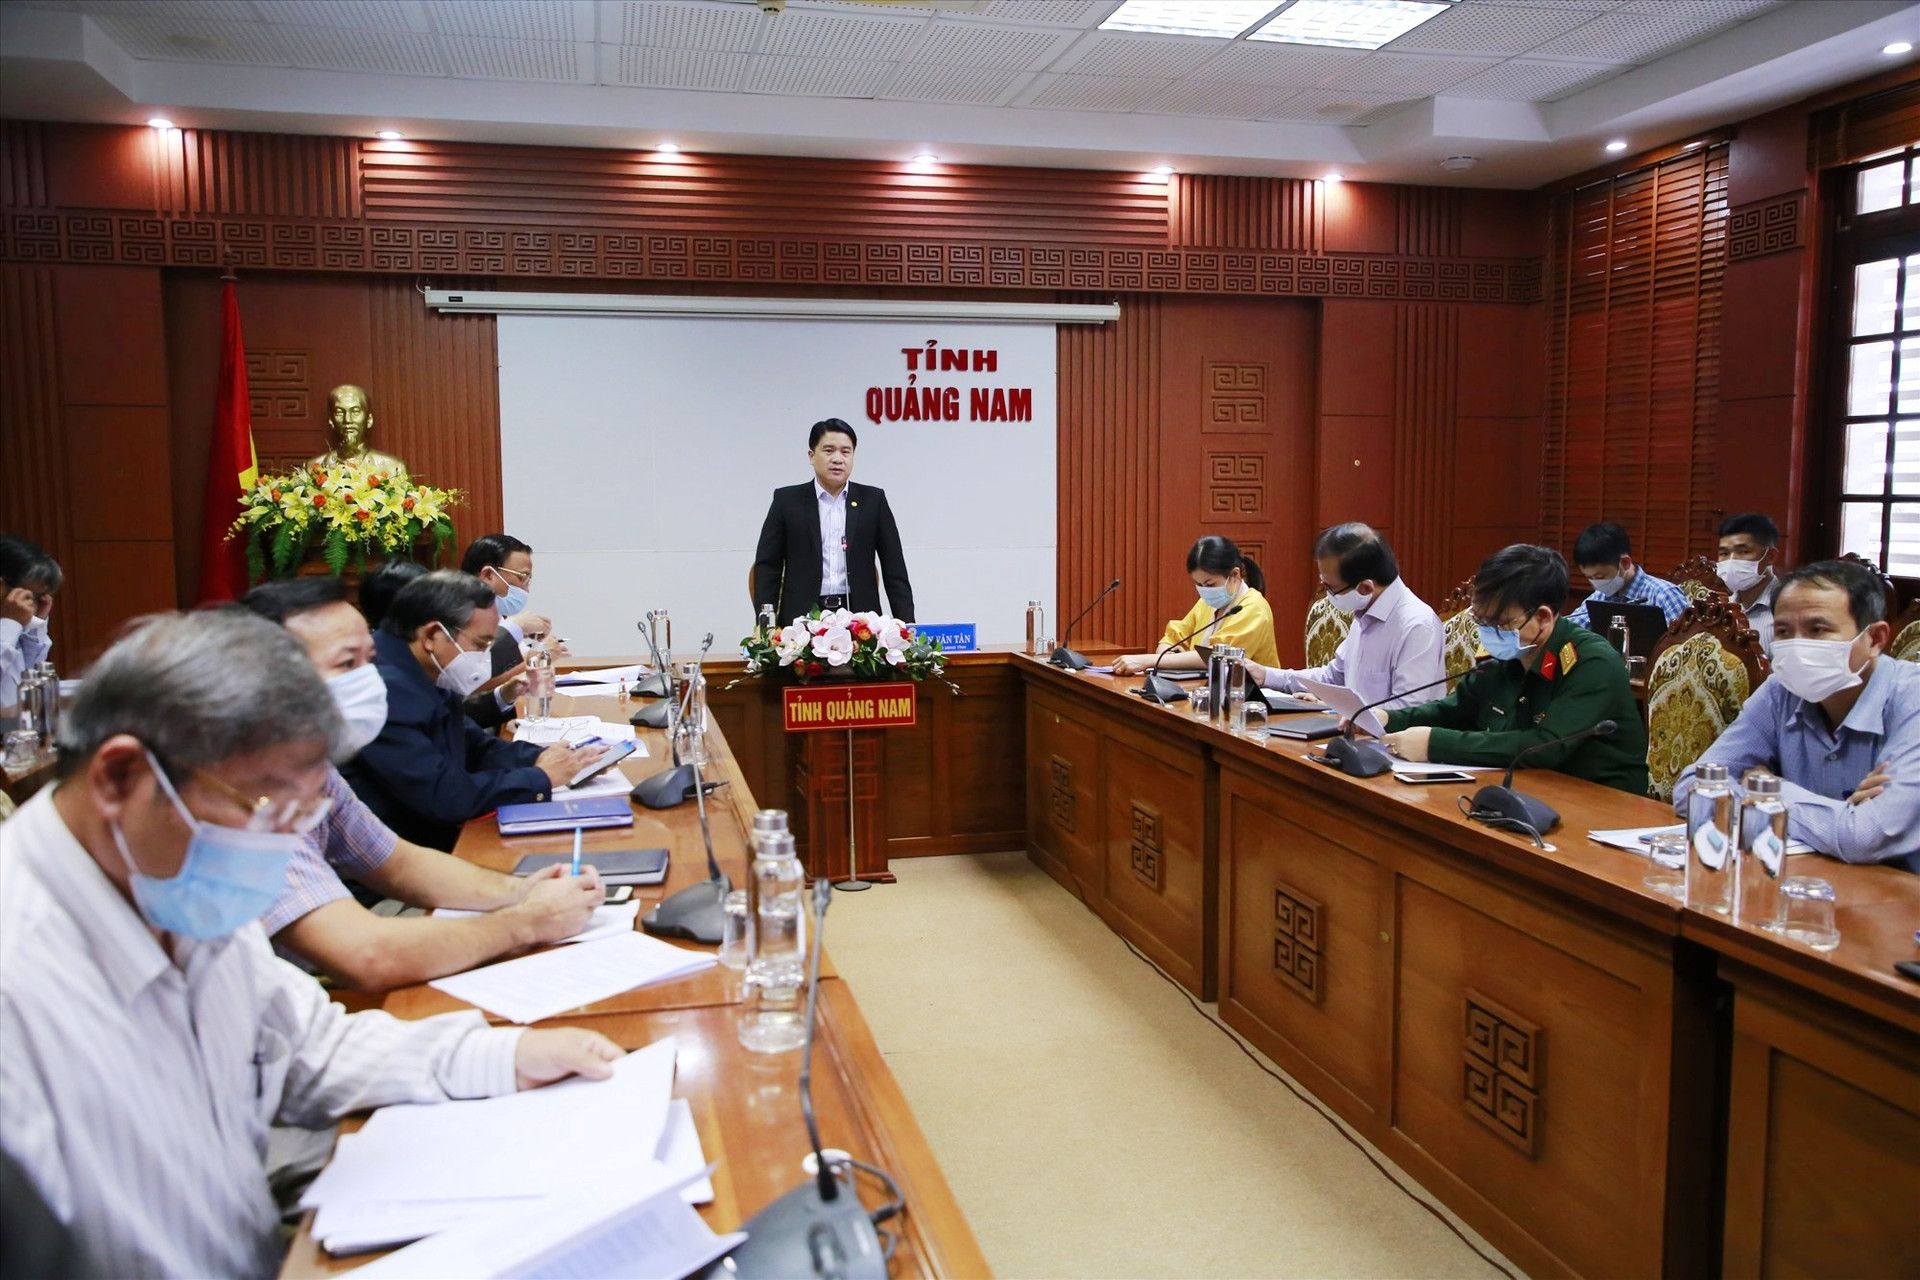 Phó Chủ tịch UBND tỉnh Trần Văn Tân phát biểu tại cuộc họp. Ảnh: T.C